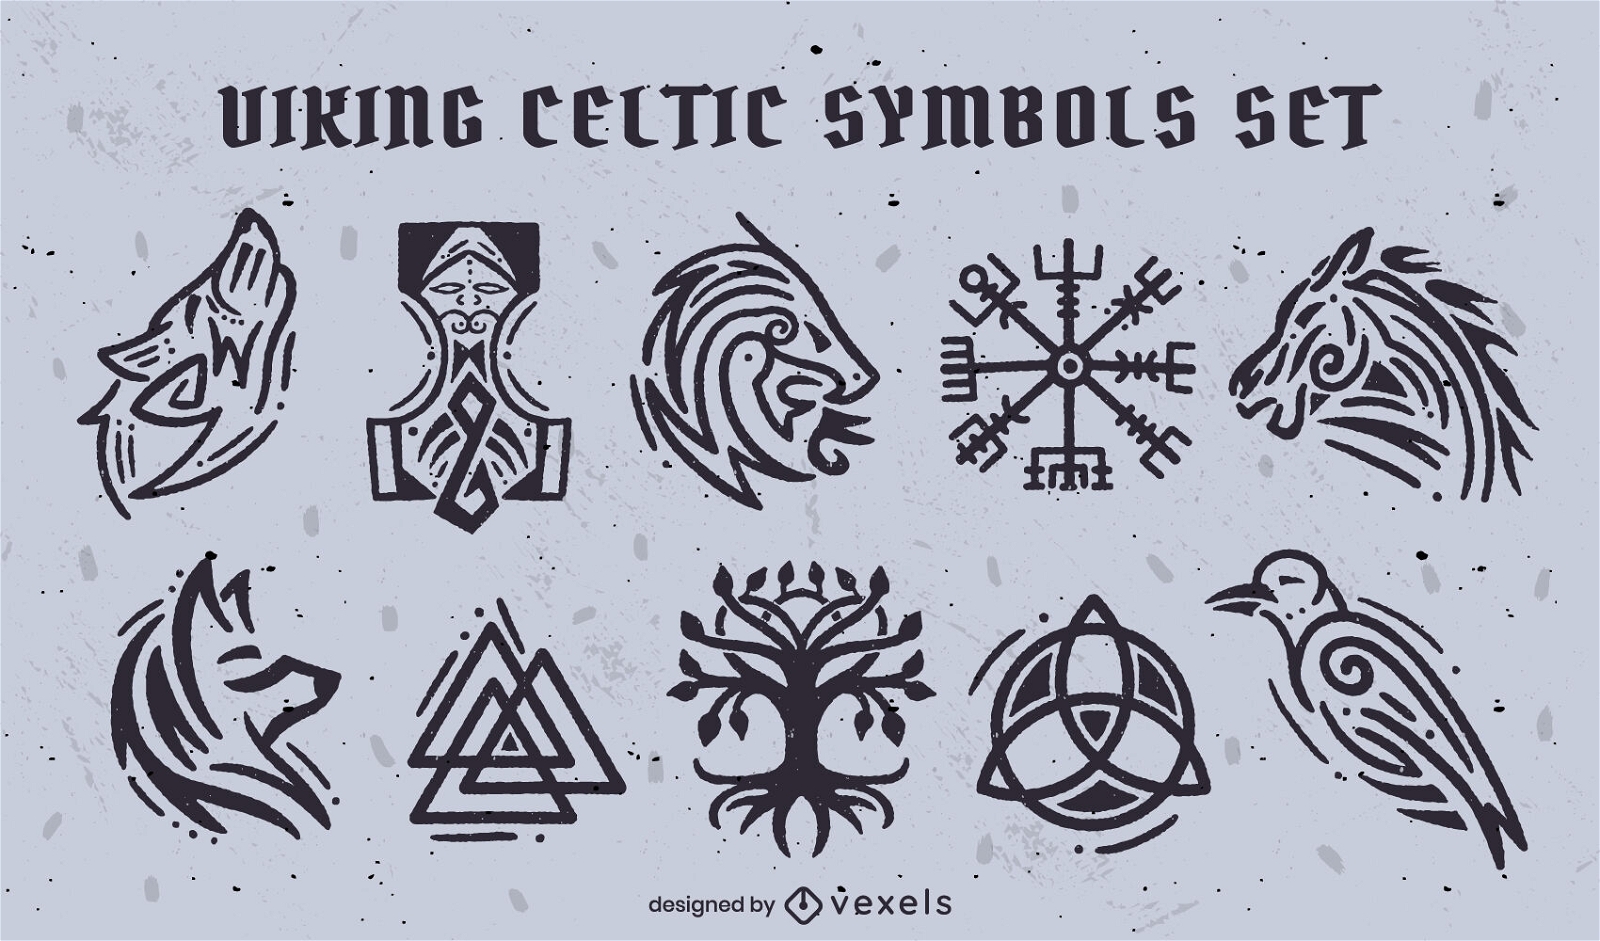 Viking celtic symbols set